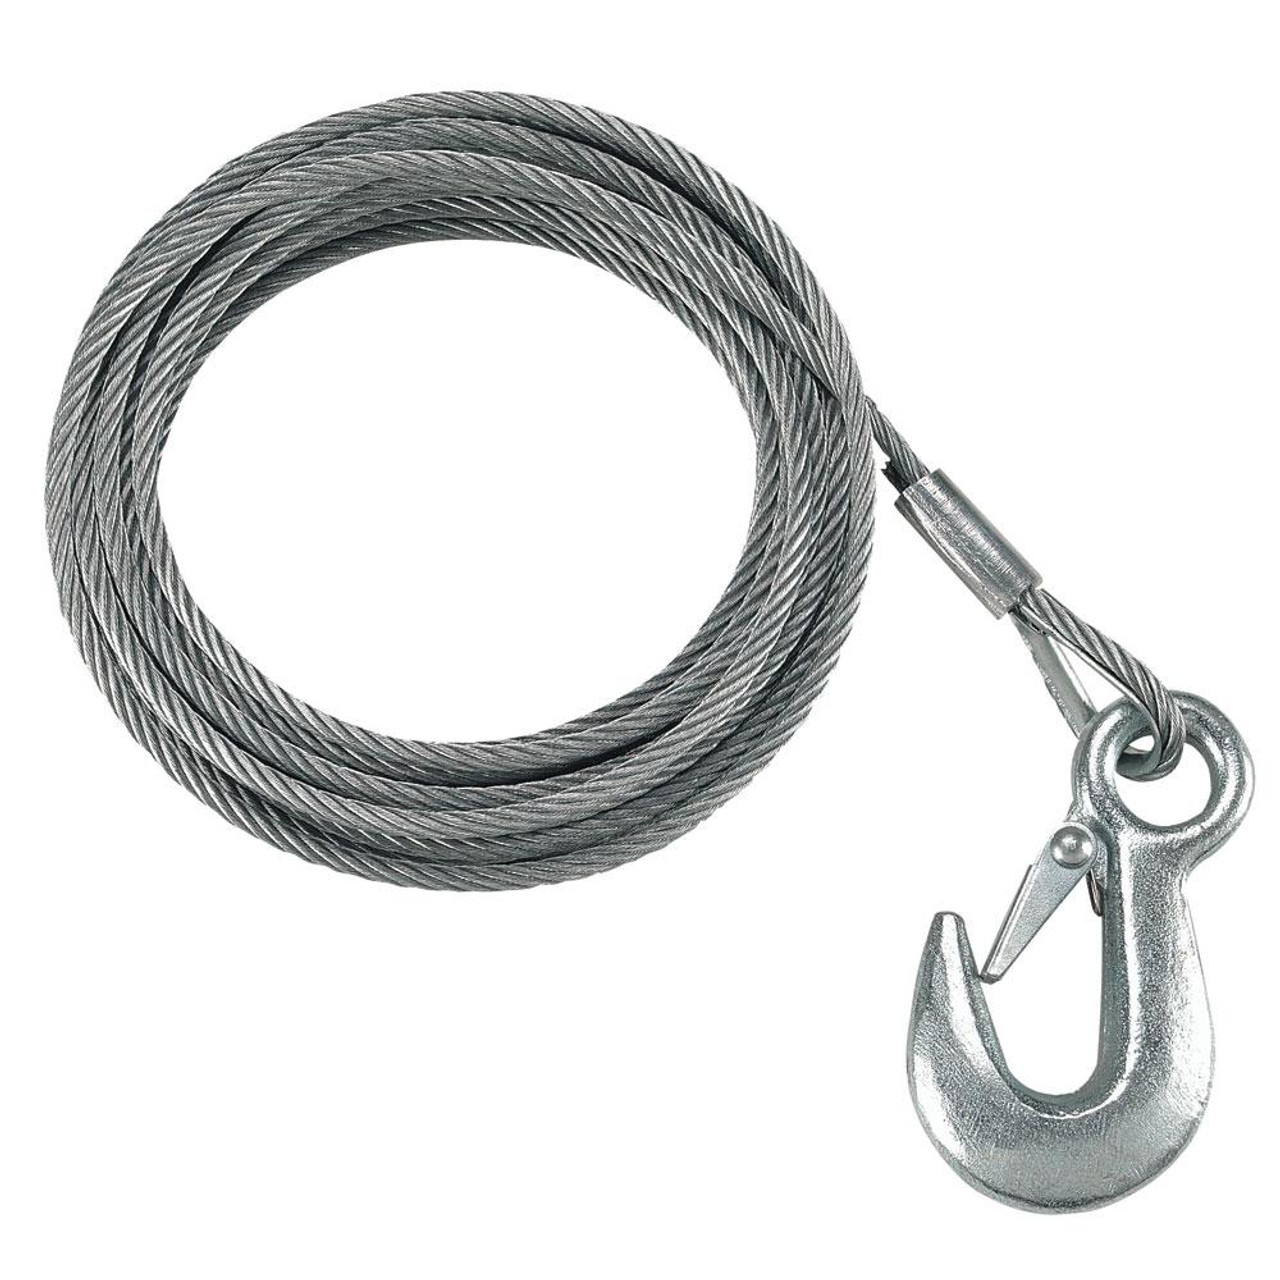 Câble et crochet de treuil galvanisé Fulton 7/32 x 50' - 5 600 lb.  Résistance à